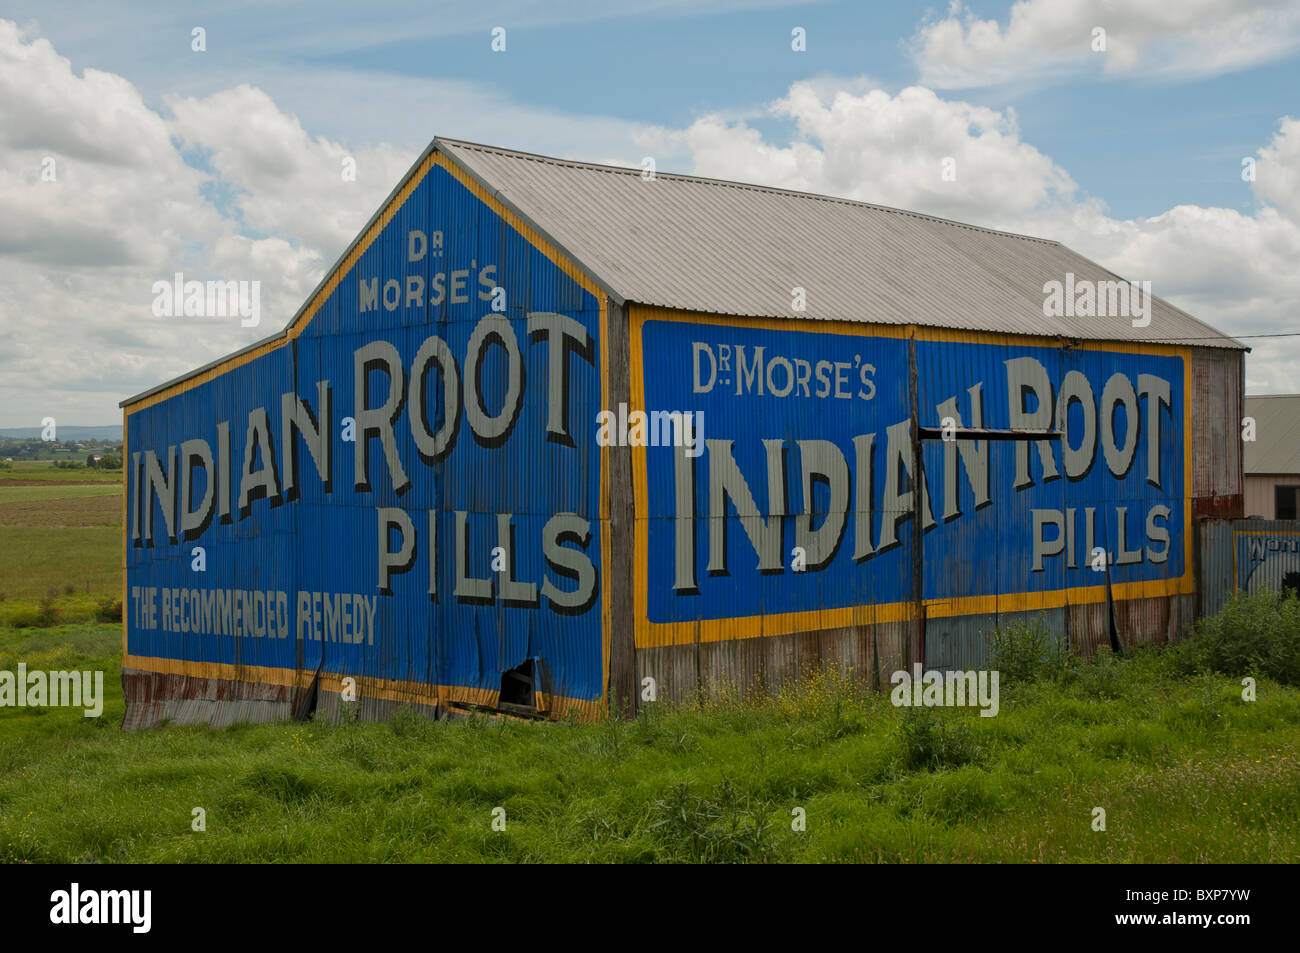 Vieille publicité de médicaments brevetés sur le côté d'une grange à la campagne à Morpeth près de Cessnock en Nouvelle-Galles du Sud Banque D'Images